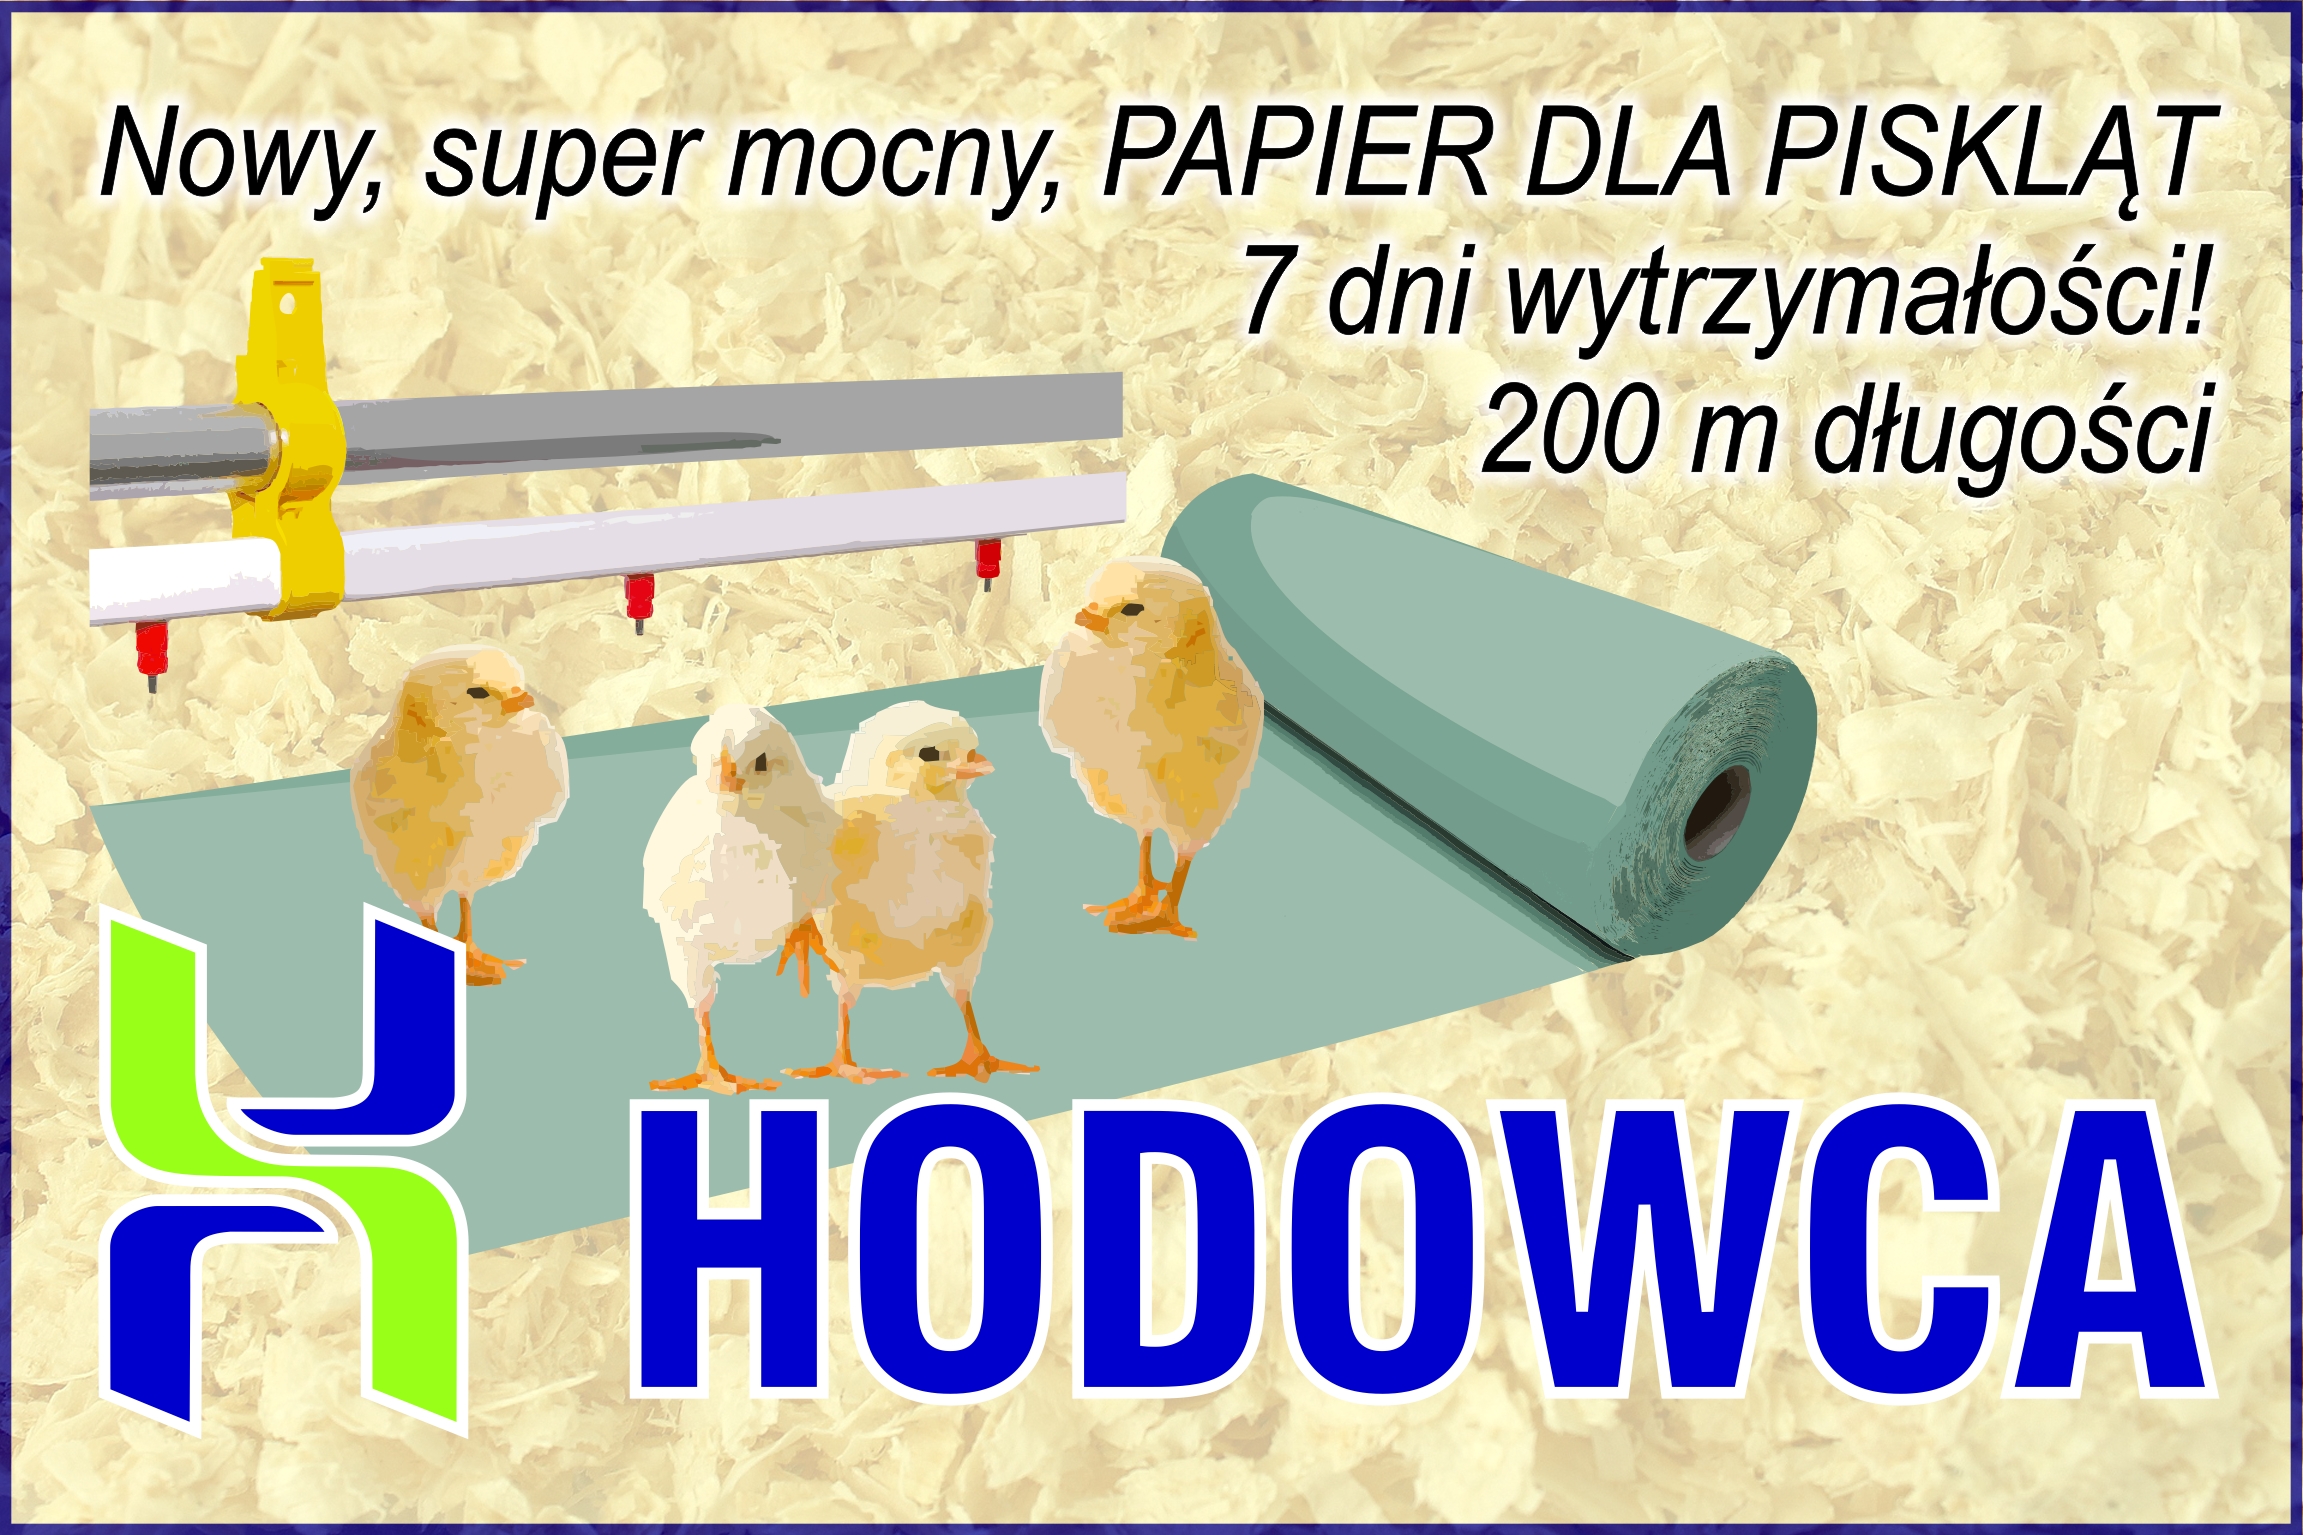  Nowy SUPER MOCNY Papier dla piskląt